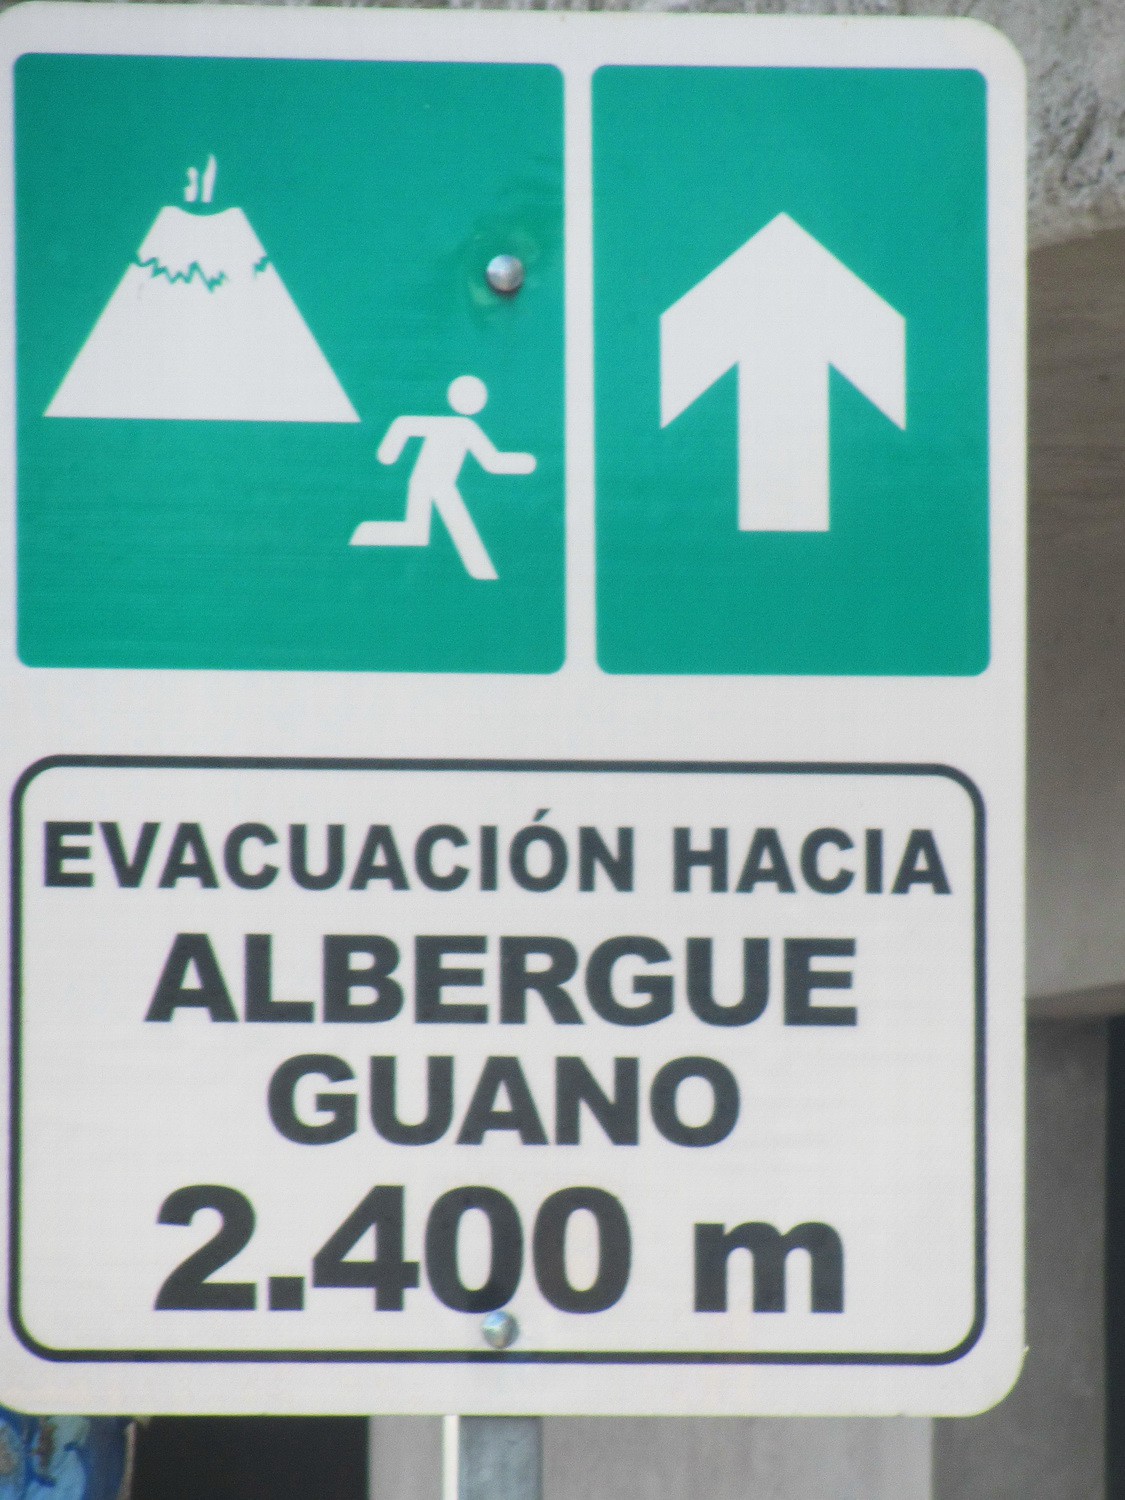 Run away from an eruption of a volcano